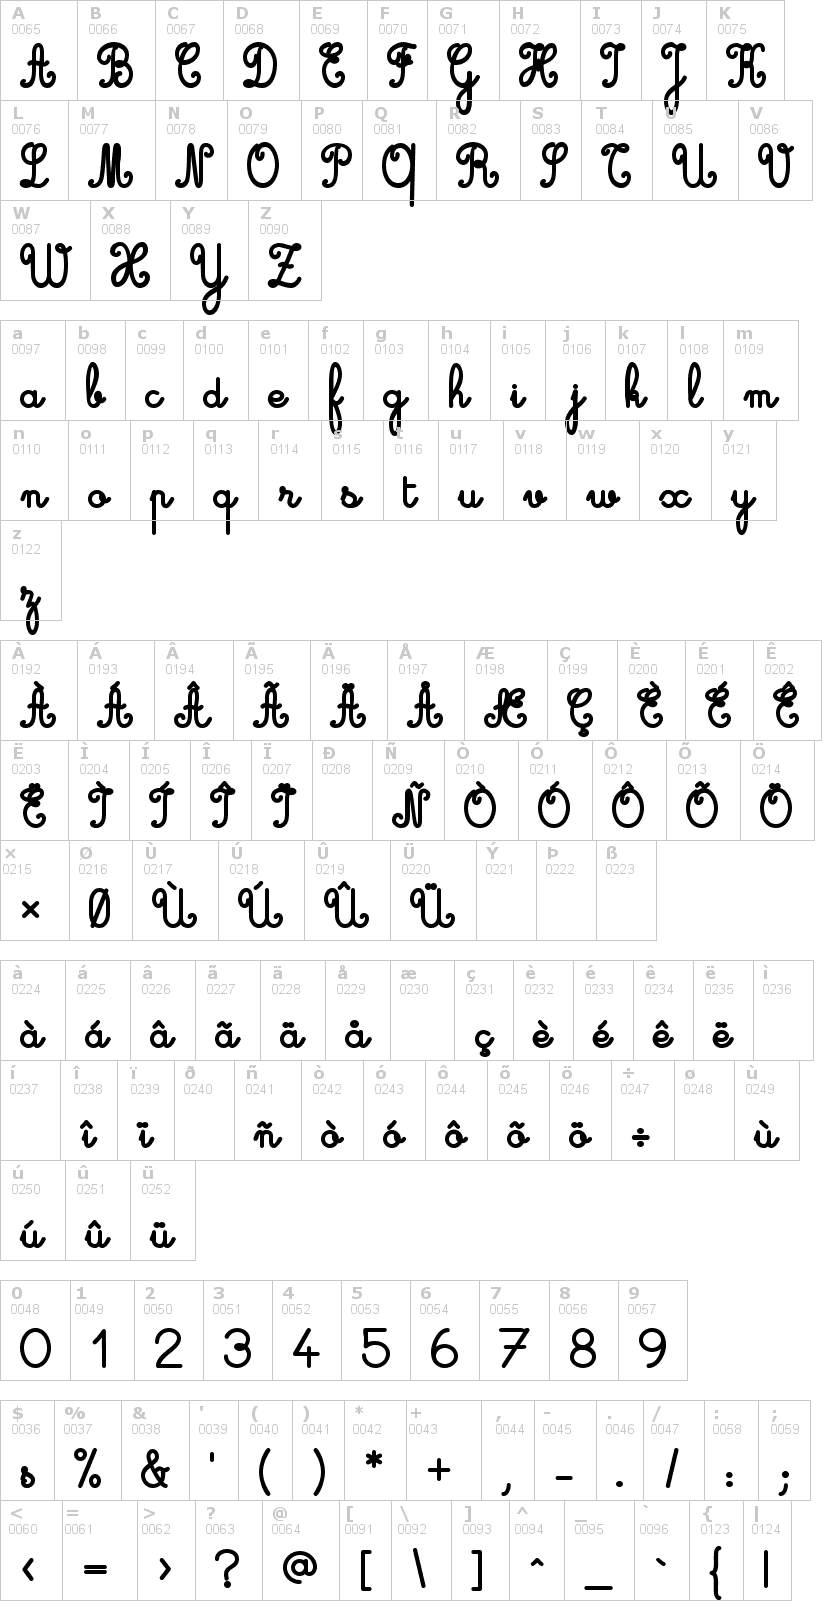 Lettere dell'alfabeto del font cursive-standard con le quali è possibile realizzare adesivi prespaziati